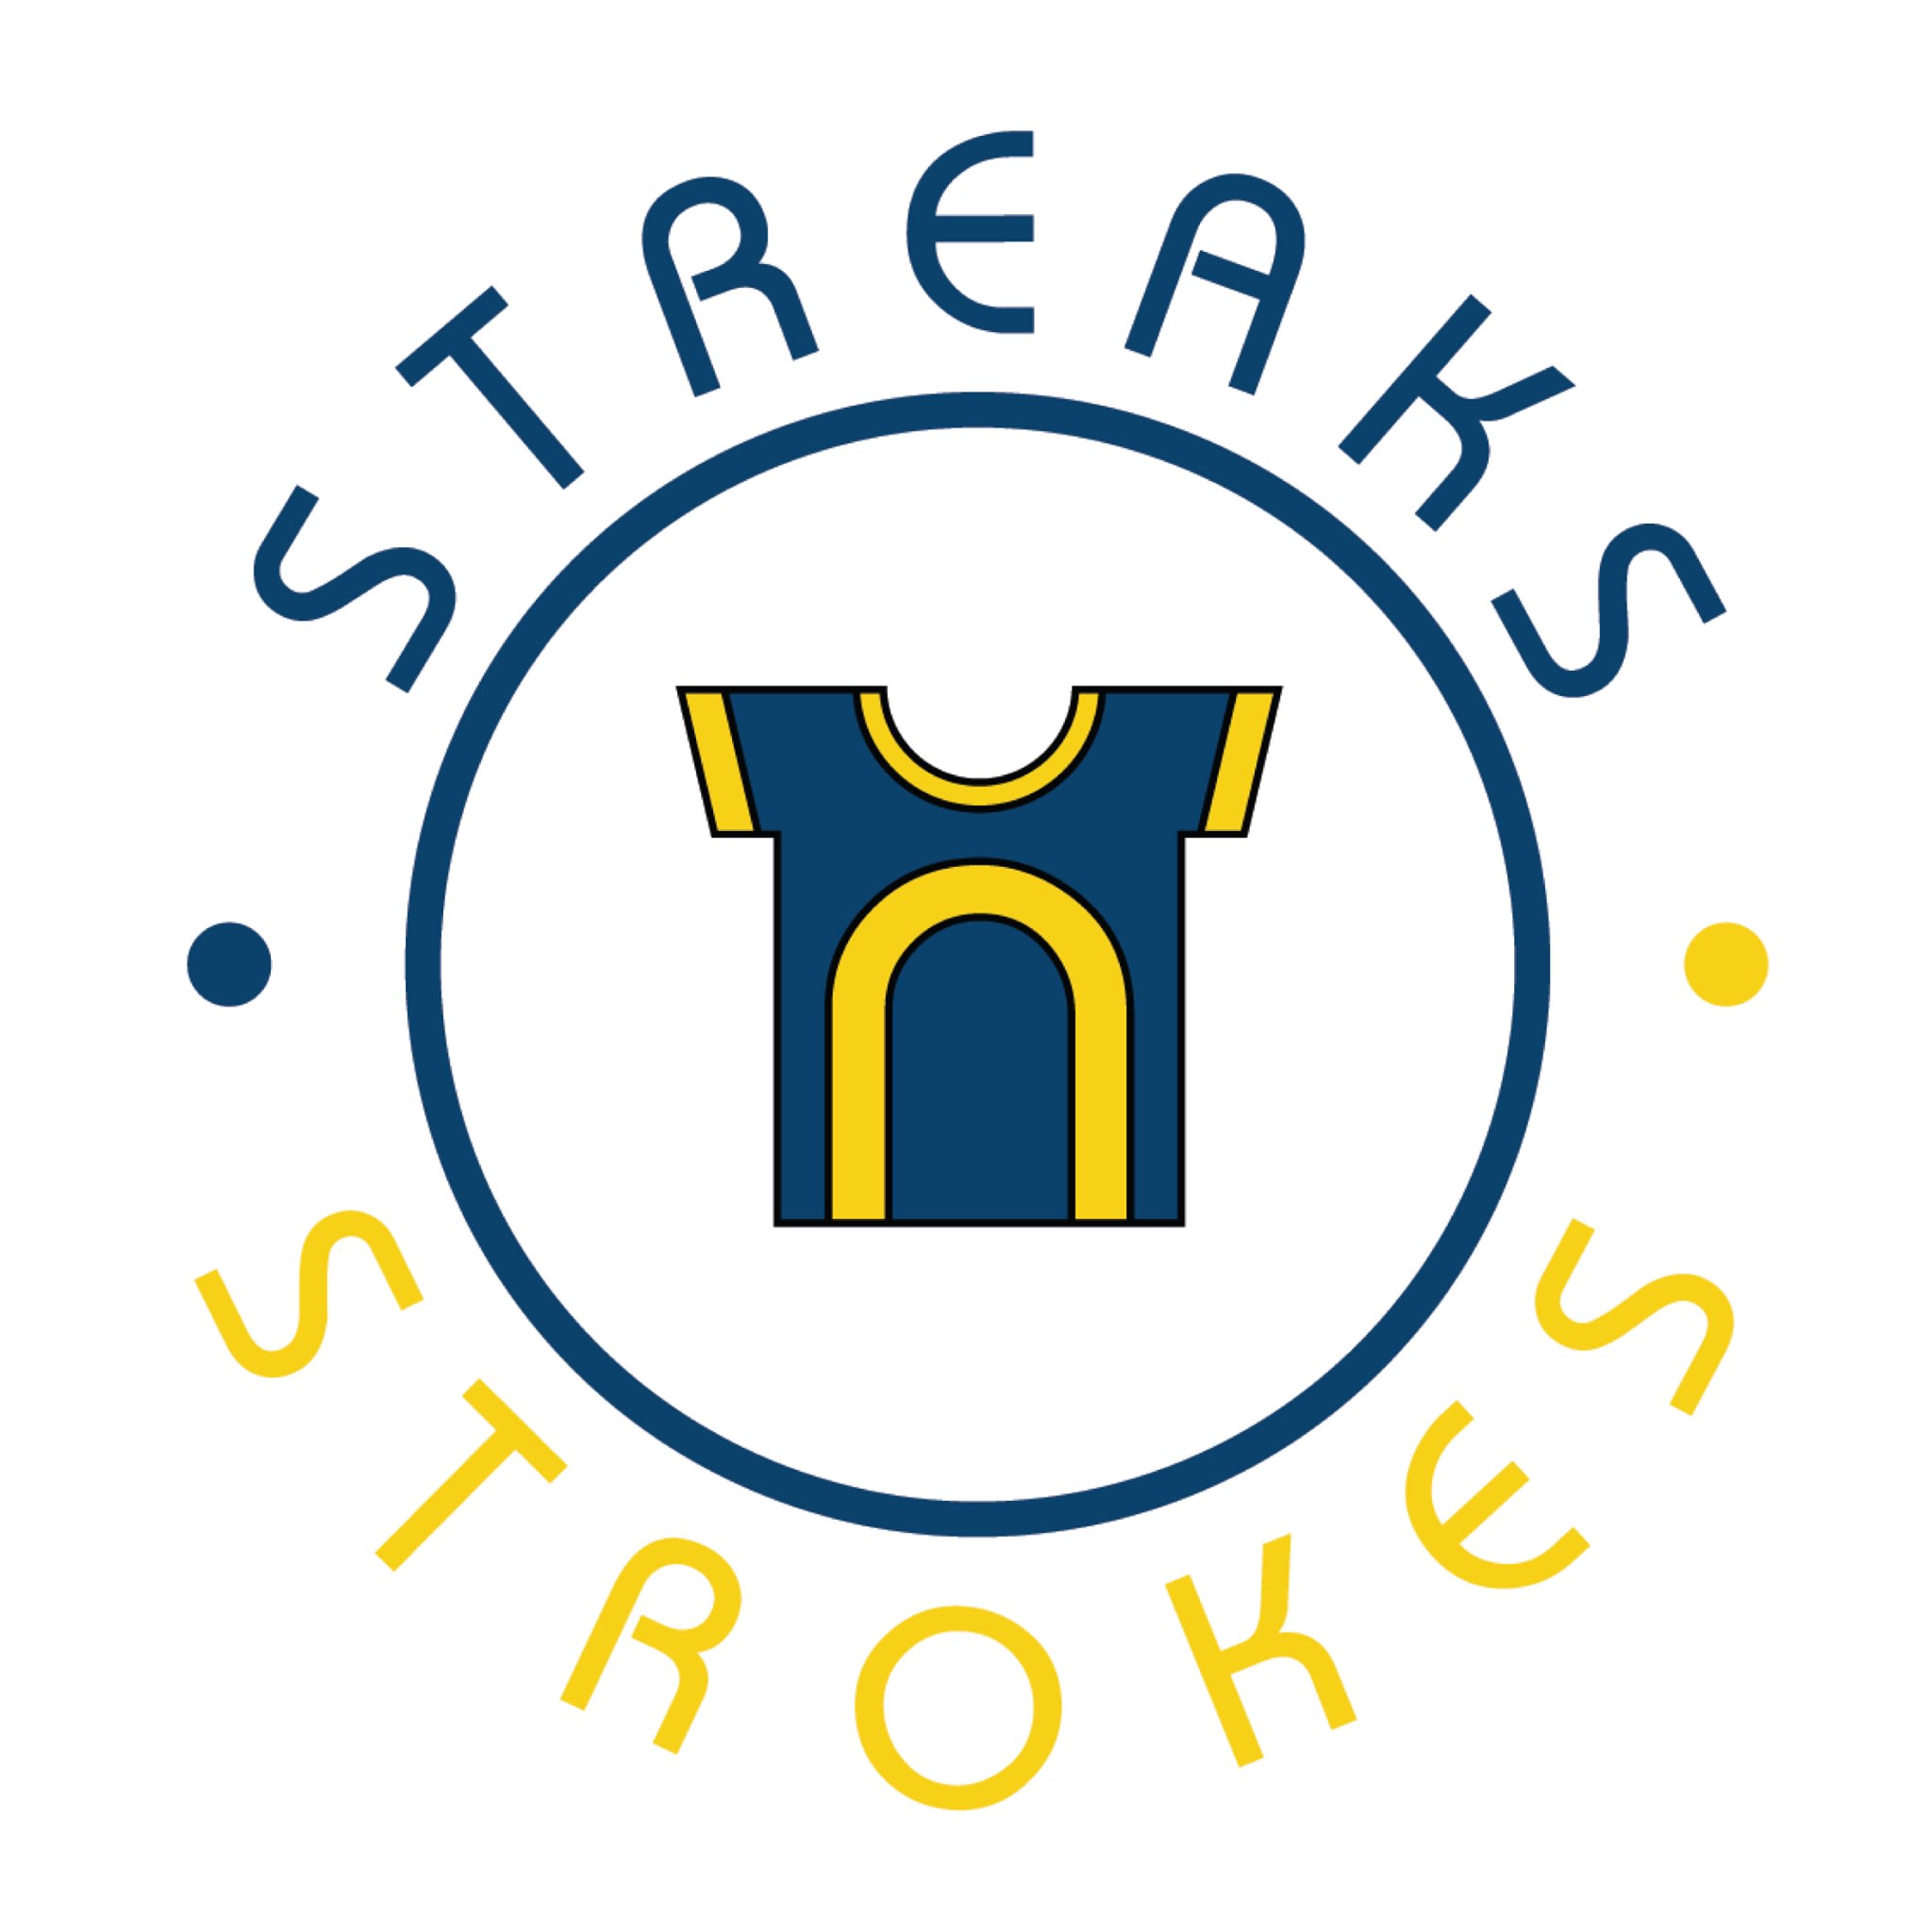 Streaks ‘n’ Strokes